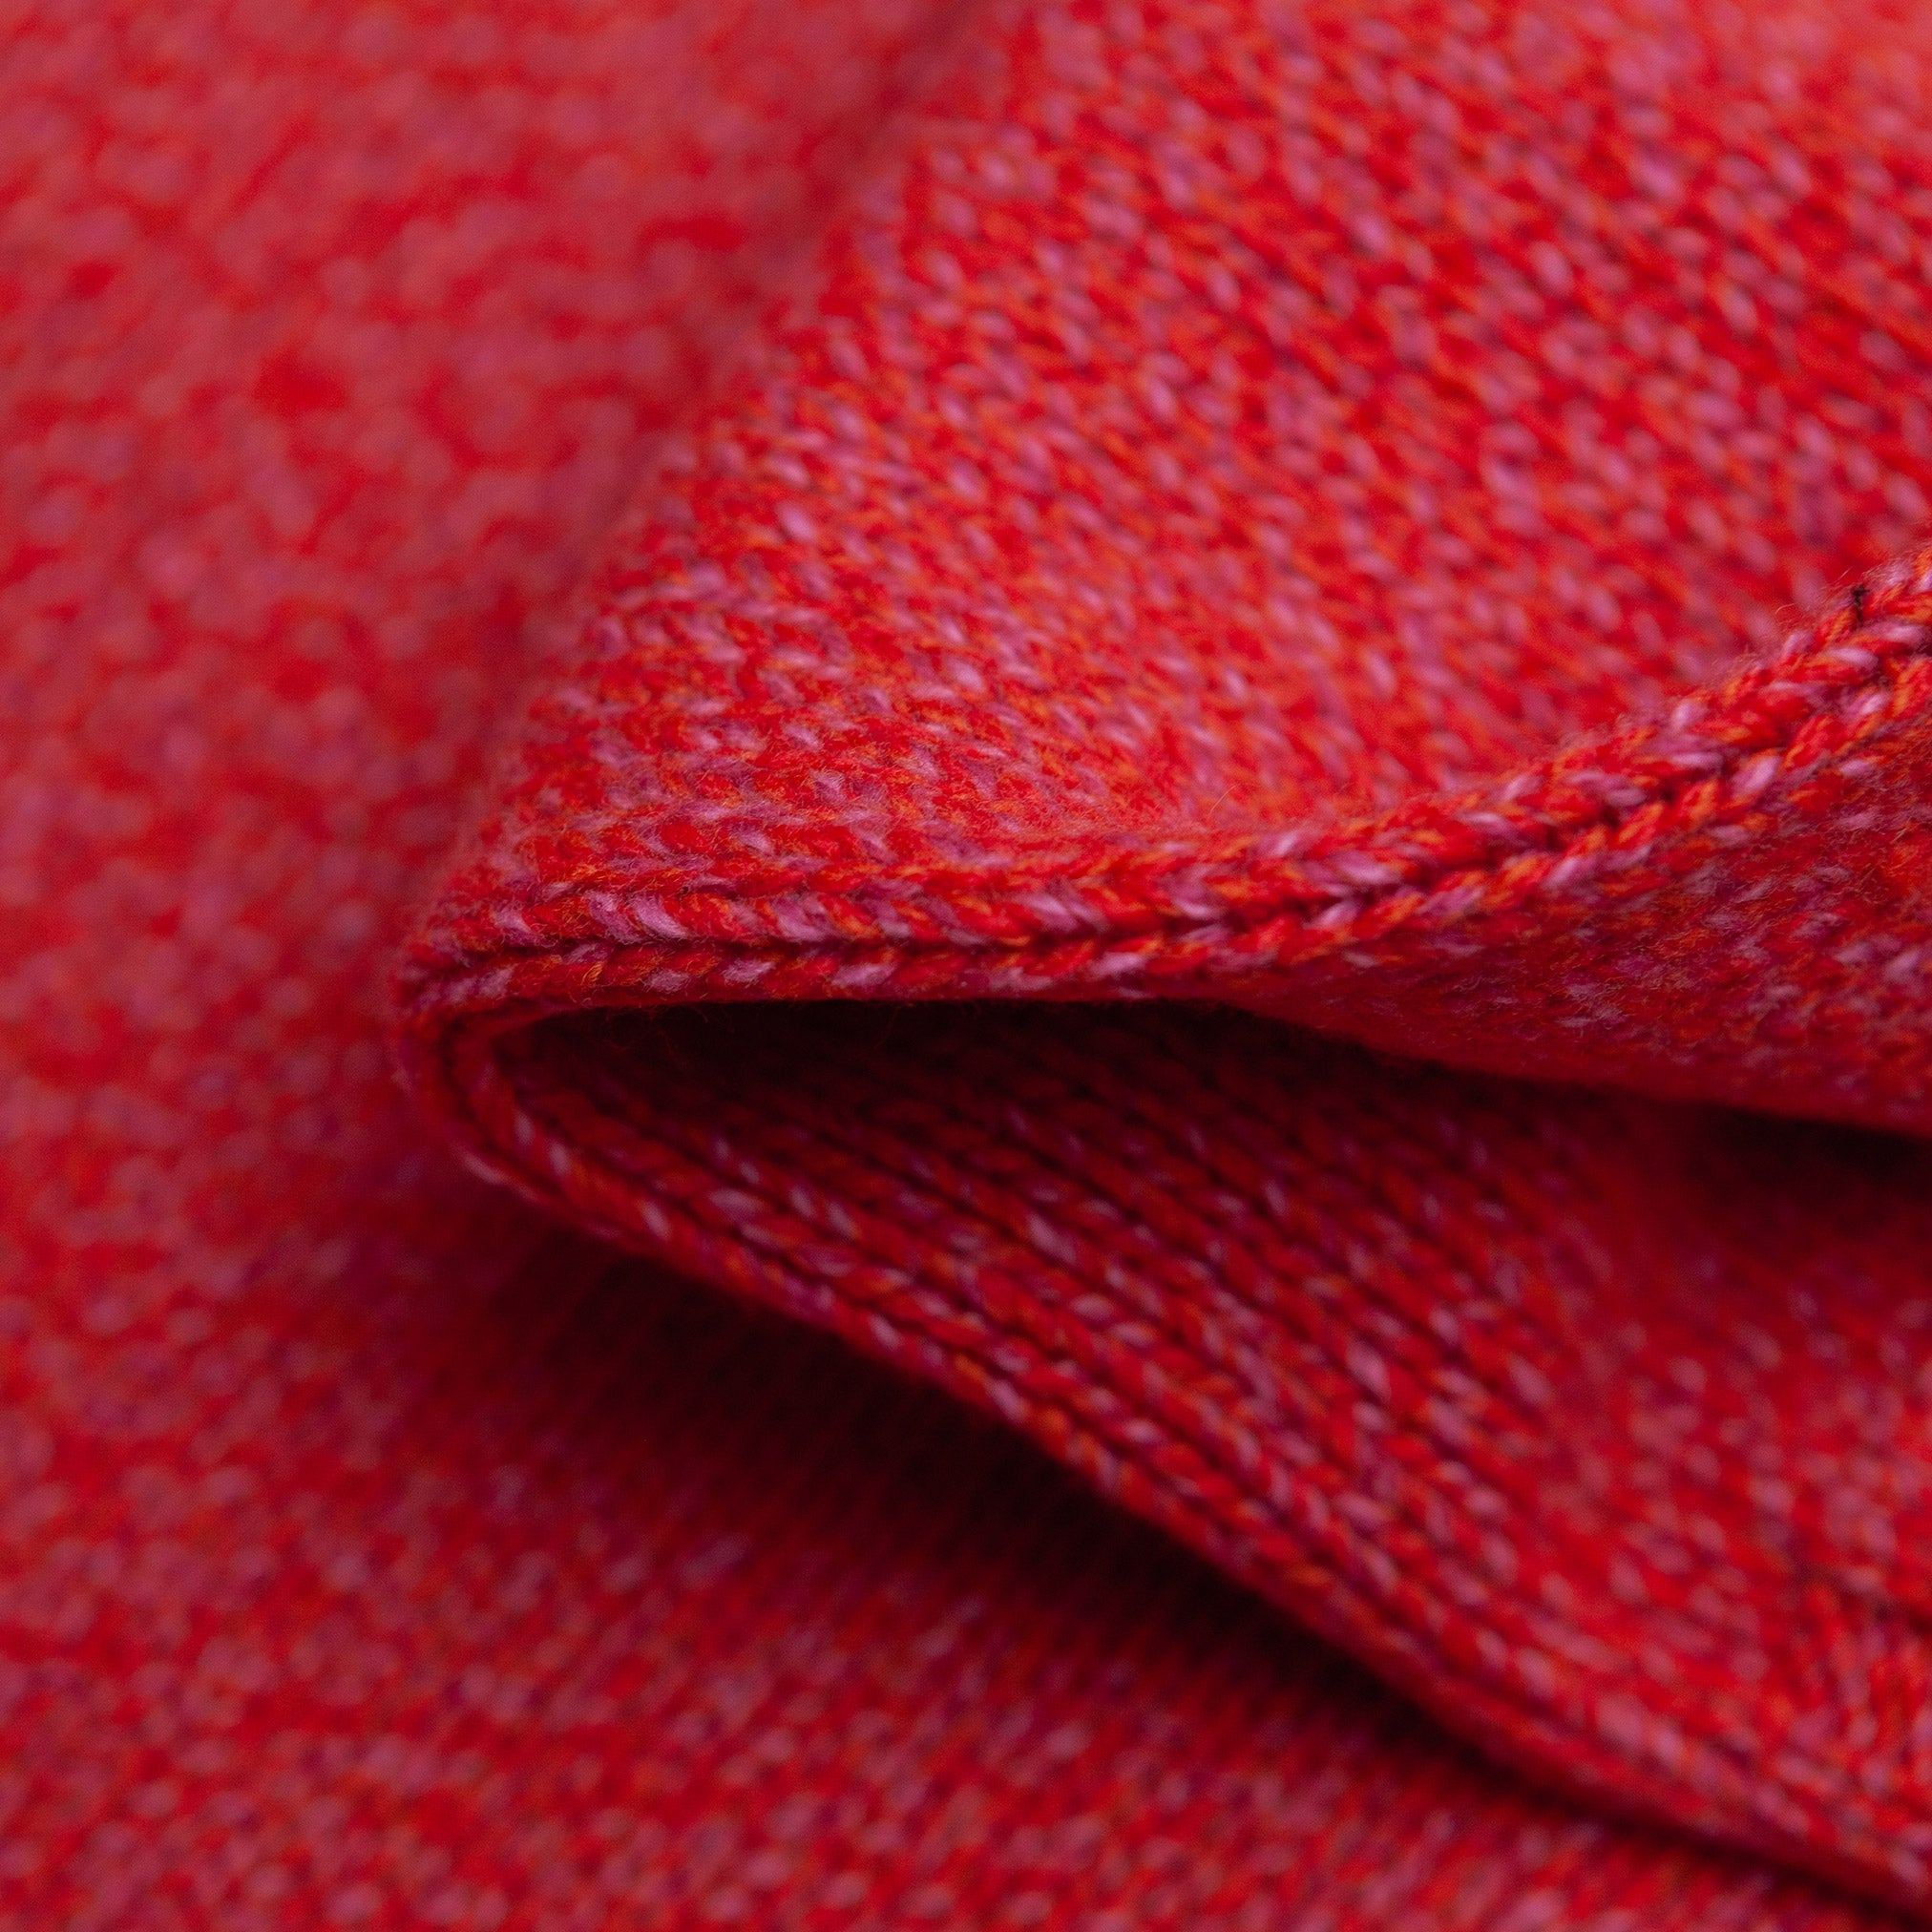 Rollneck Sweater in Red Melange